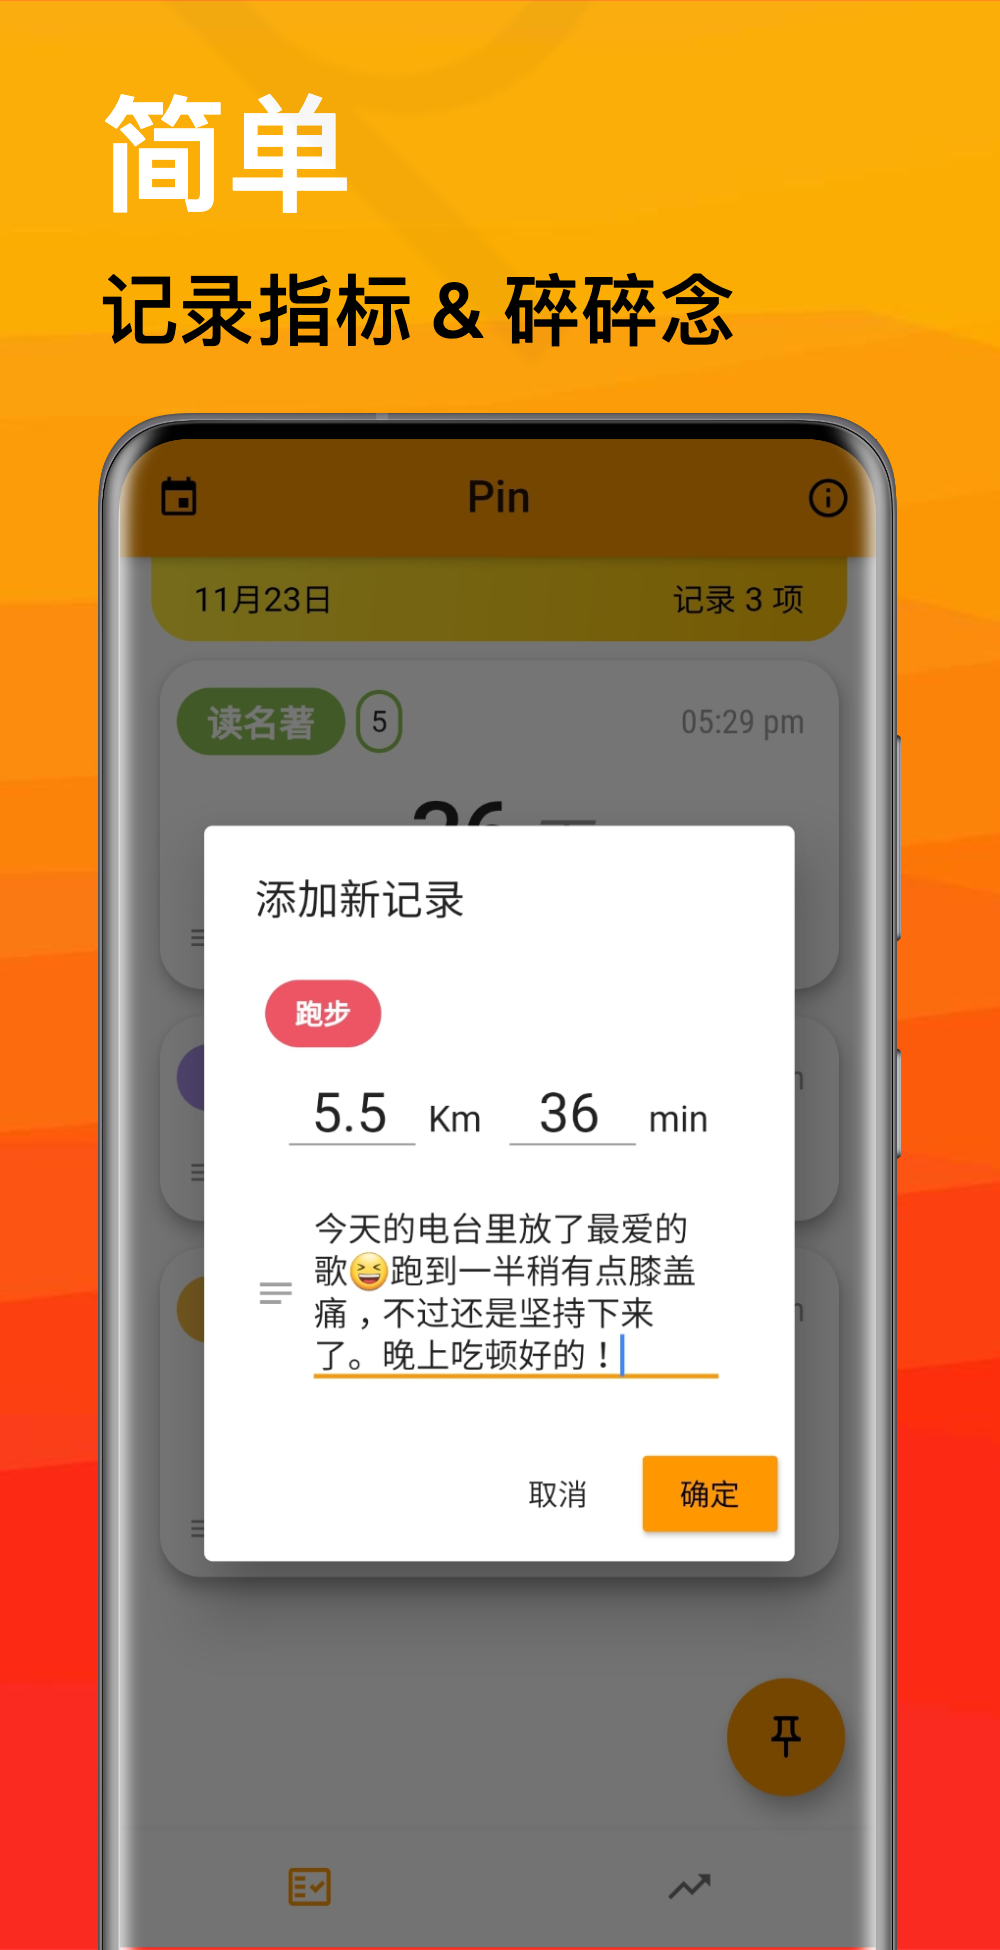 Pin极简记录app官方版下载 v1.0.0截图